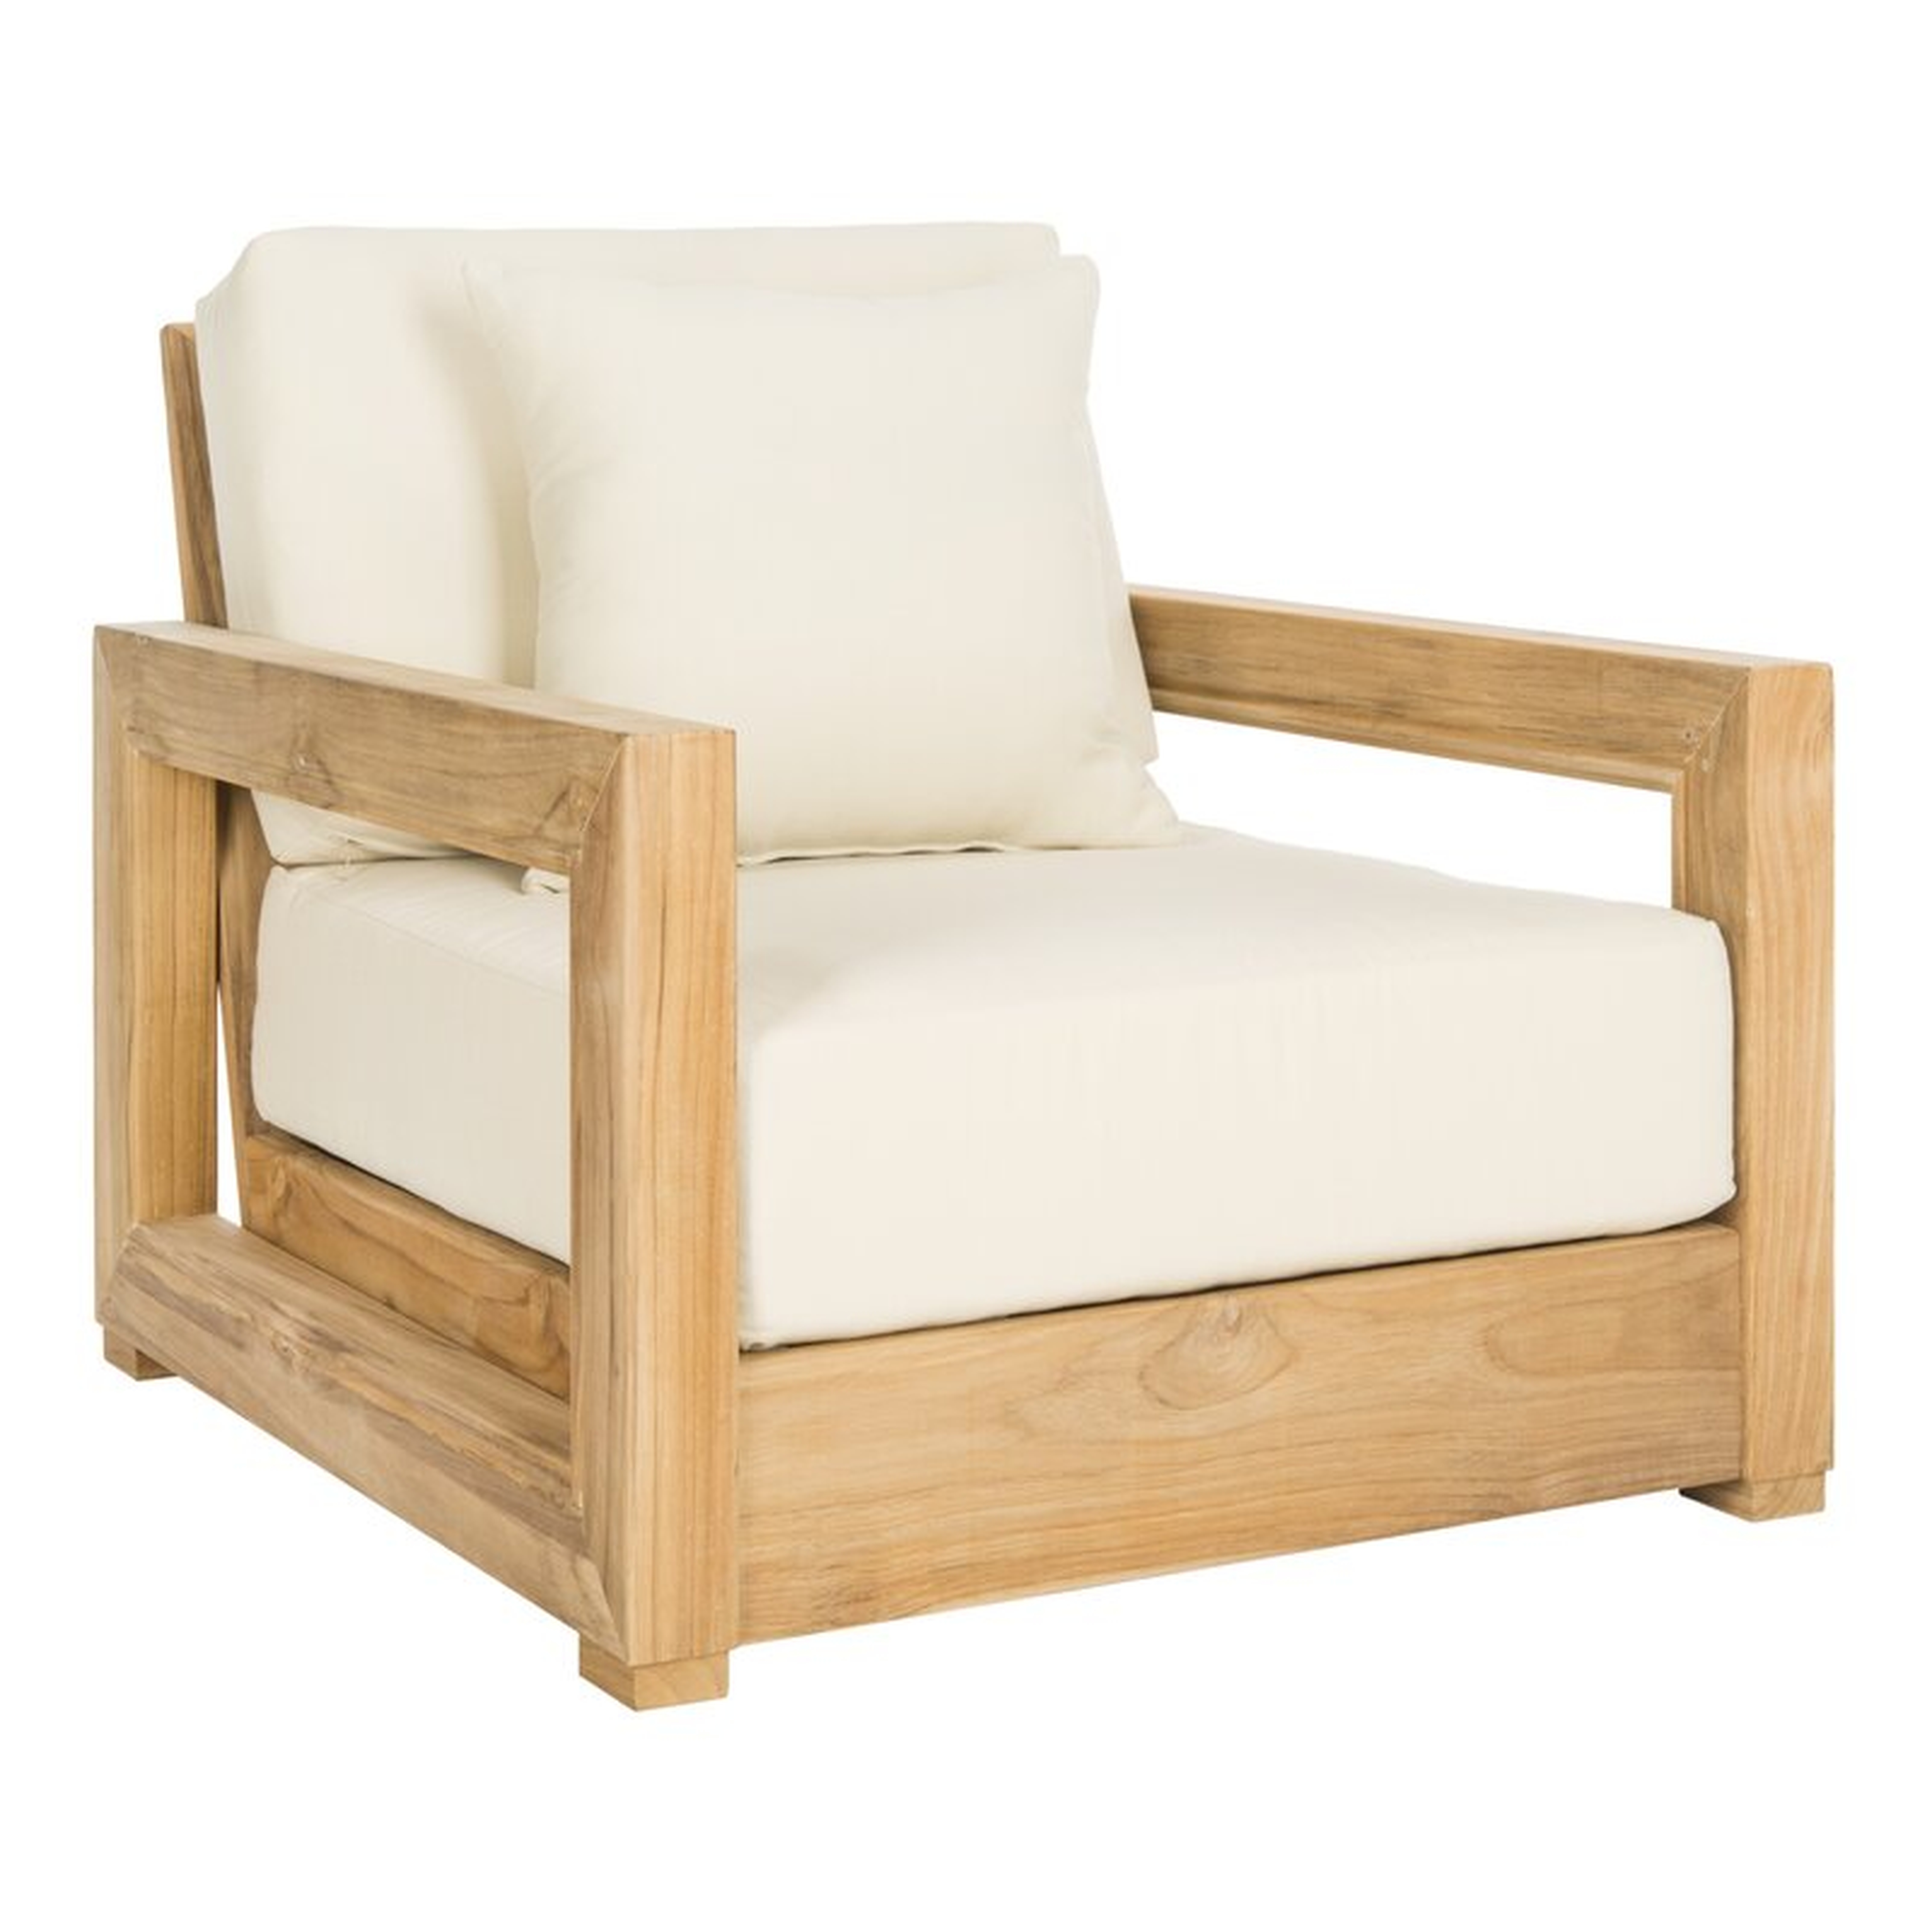 Montford Teak Patio Chair with Cushions - Perigold